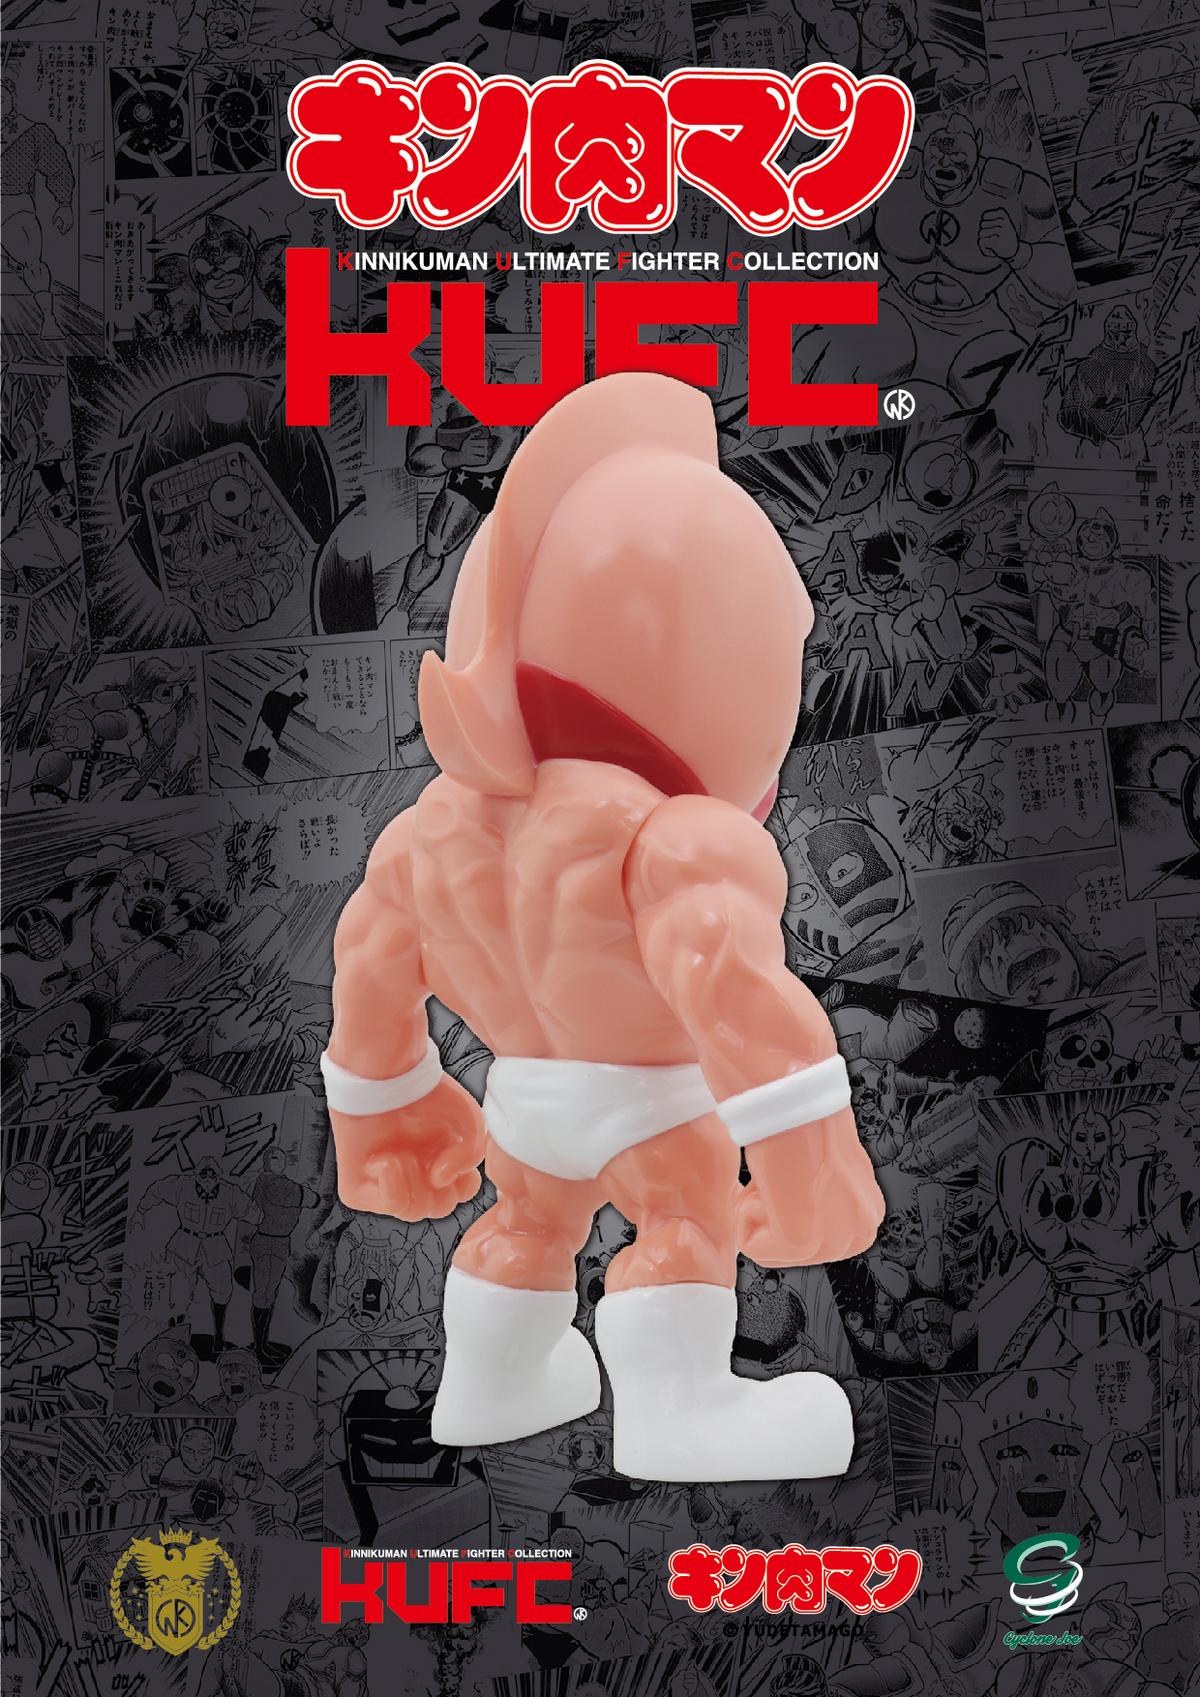 キン肉マンのフィギュア新ブランド「KUFC（KINNIKUMAN ULTIMATE FIGHTER COLLECTION）」が登場！